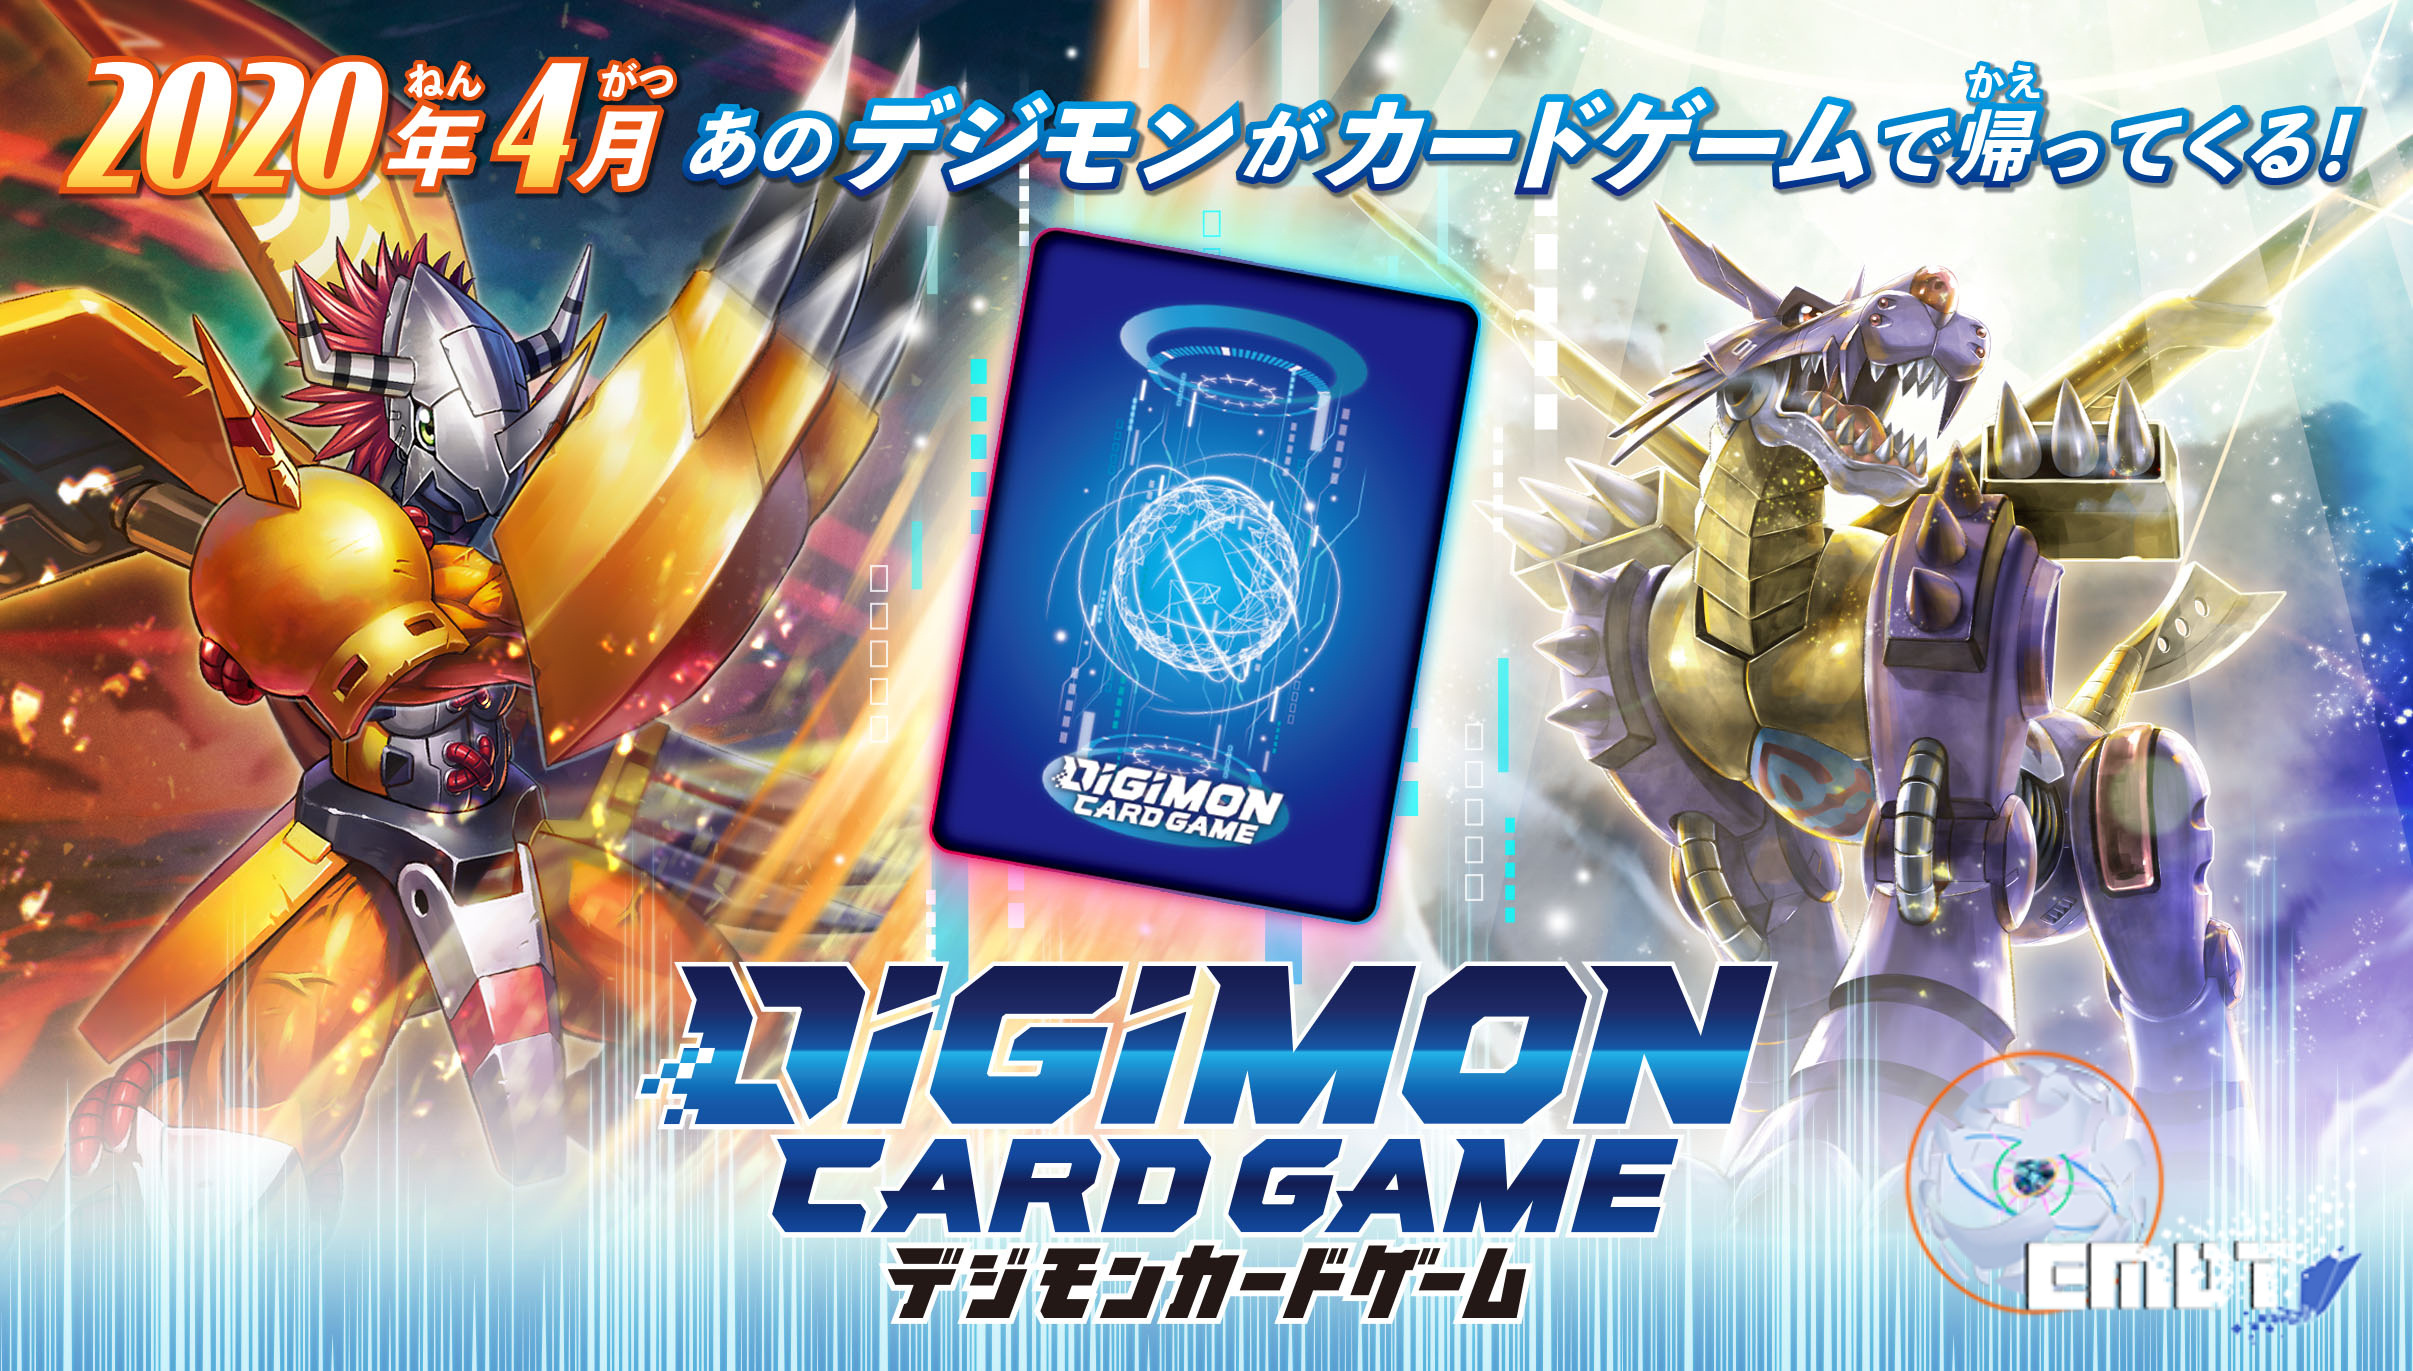 [Post oficial] Introducción a la franquicia multimedia Digimon. Digimon-trading-card-game-2020